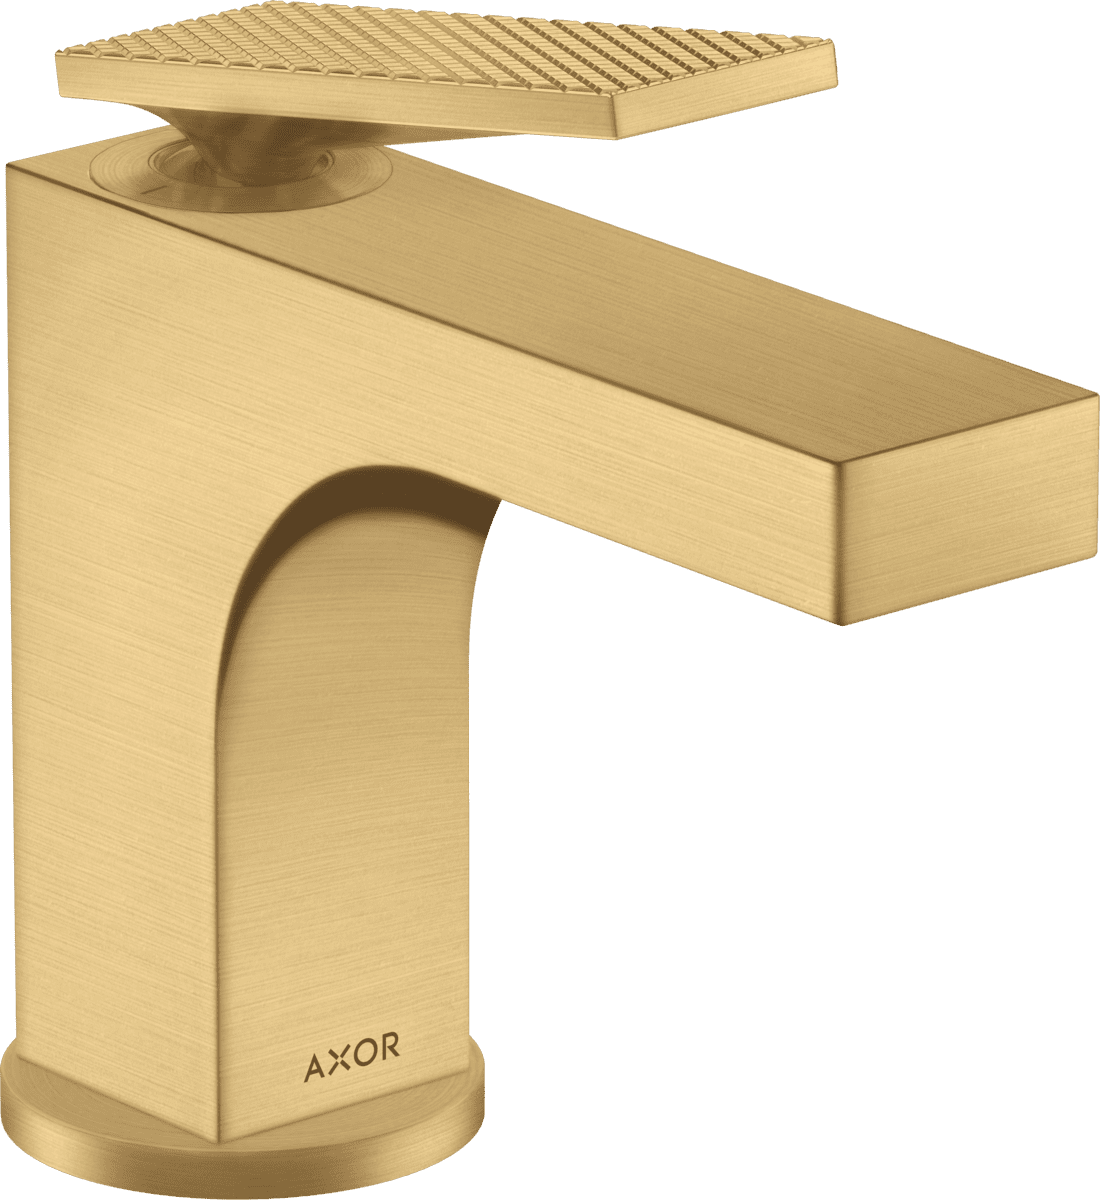 εικόνα του HANSGROHE AXOR Citterio Single lever basin mixer 90 with lever handle for hand wash basins with pop-up waste set - rhombic cut #39001250 - Brushed Gold Optic